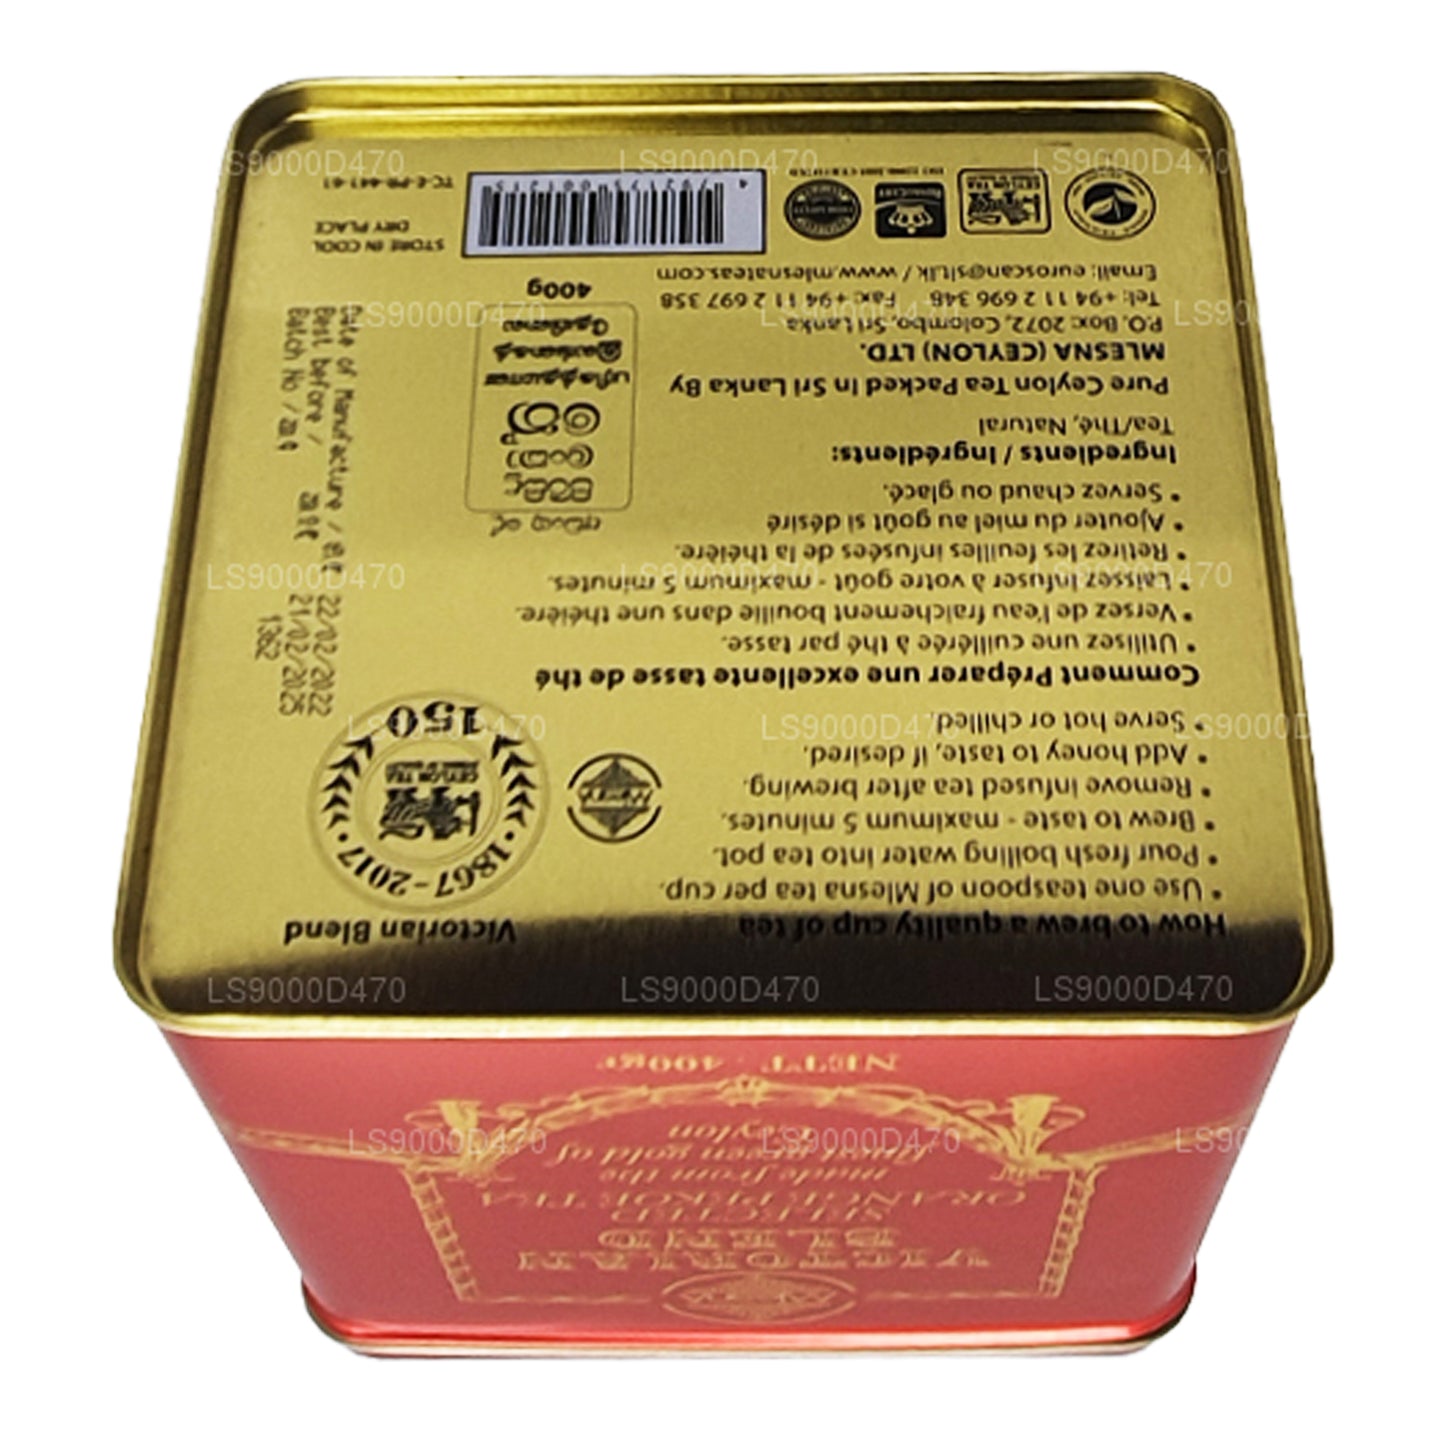 Mlesna Викторианская смесь листового чая высшего сорта (200 г)